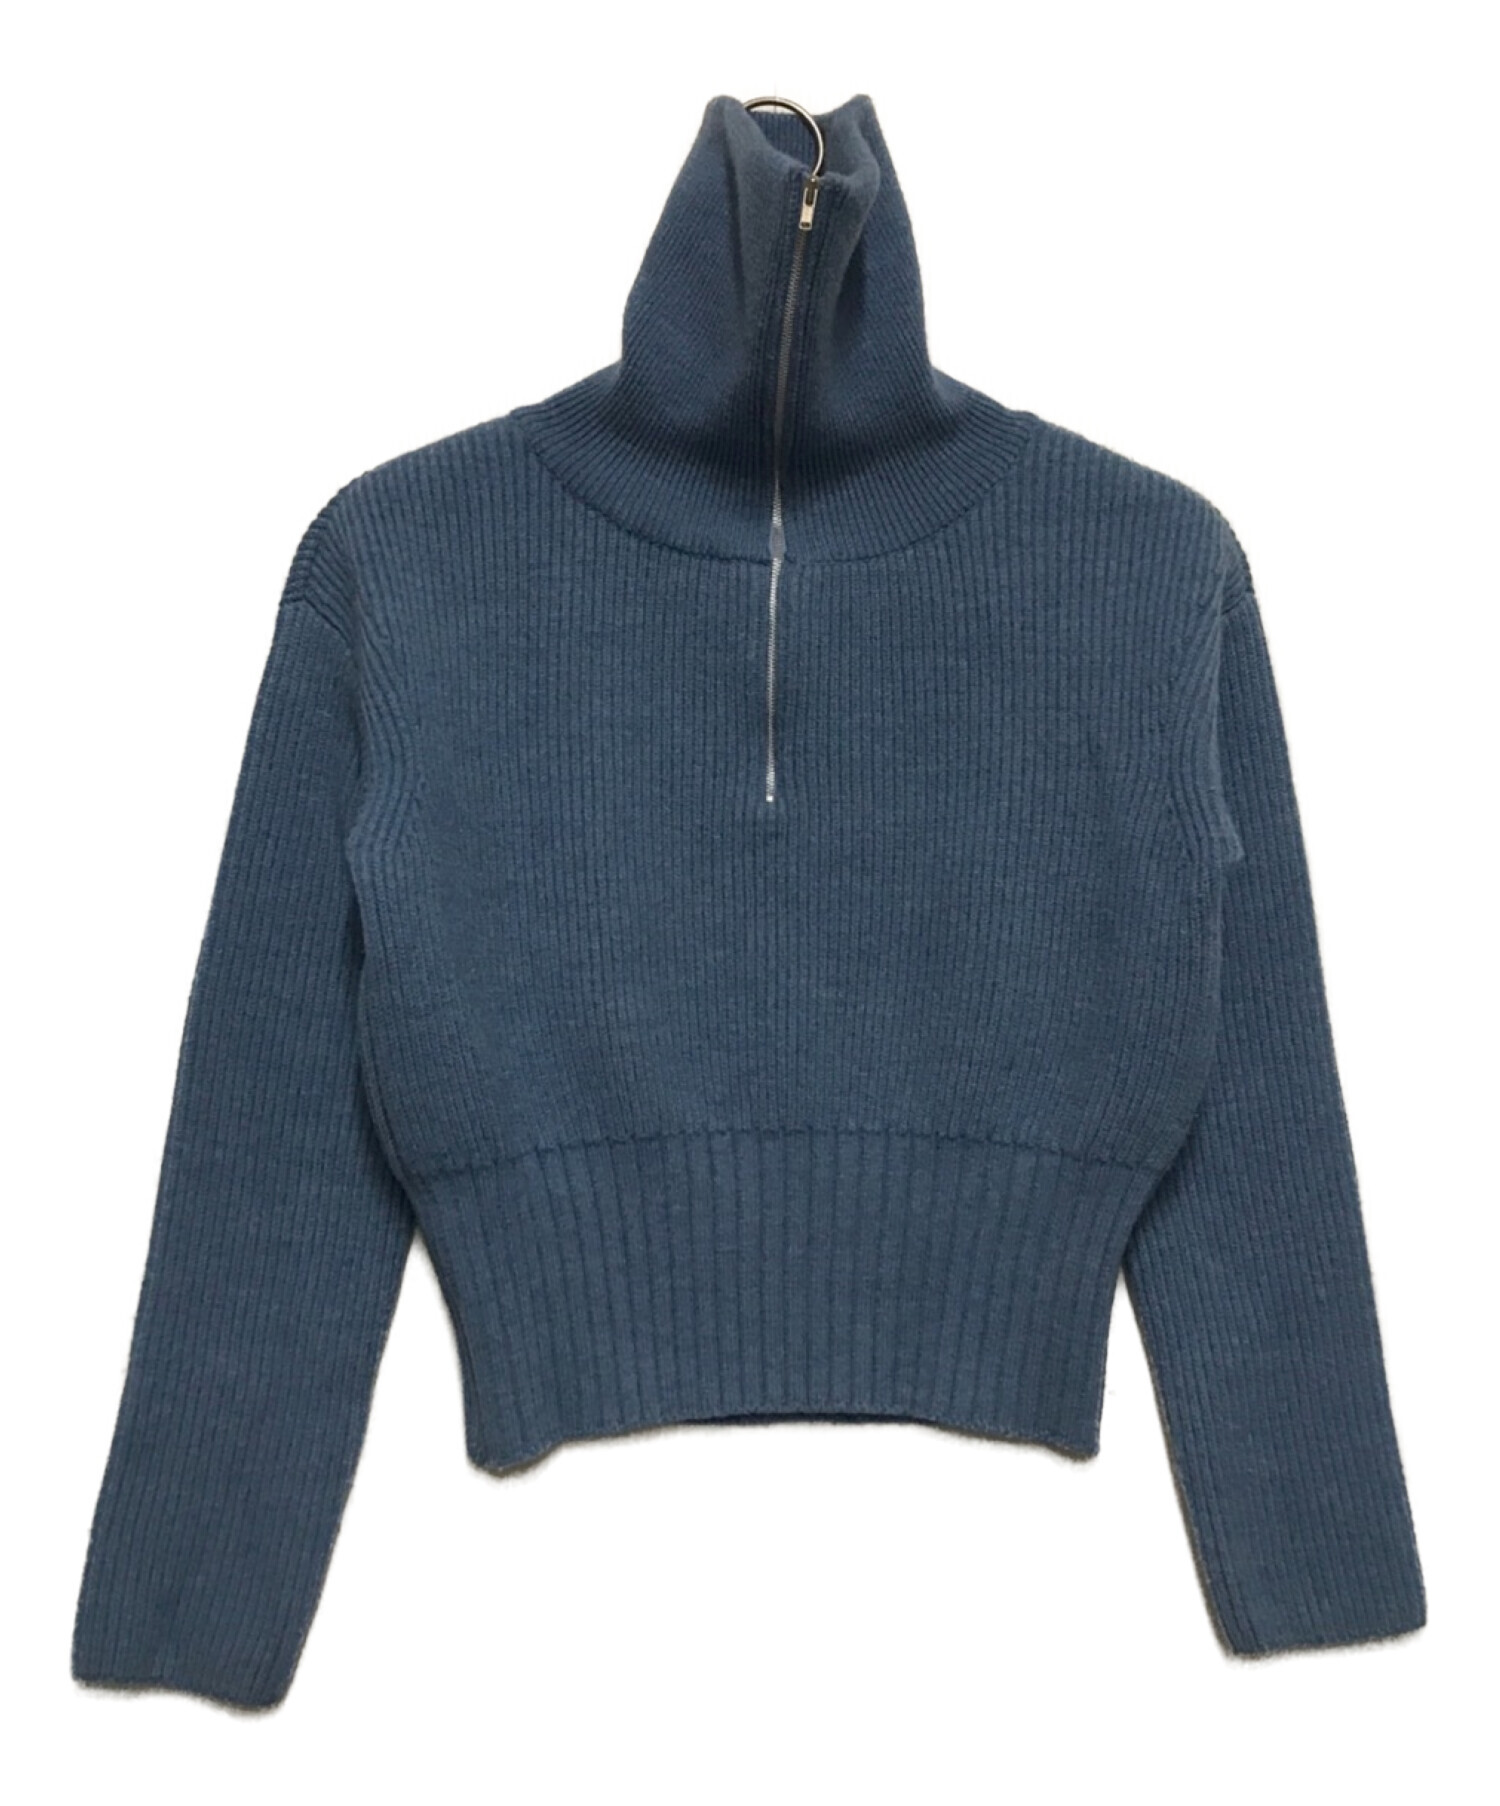 TELOPLAN (テーロプラン) Ito Collar Sweater/ハーフジップニット ブルー サイズ:F